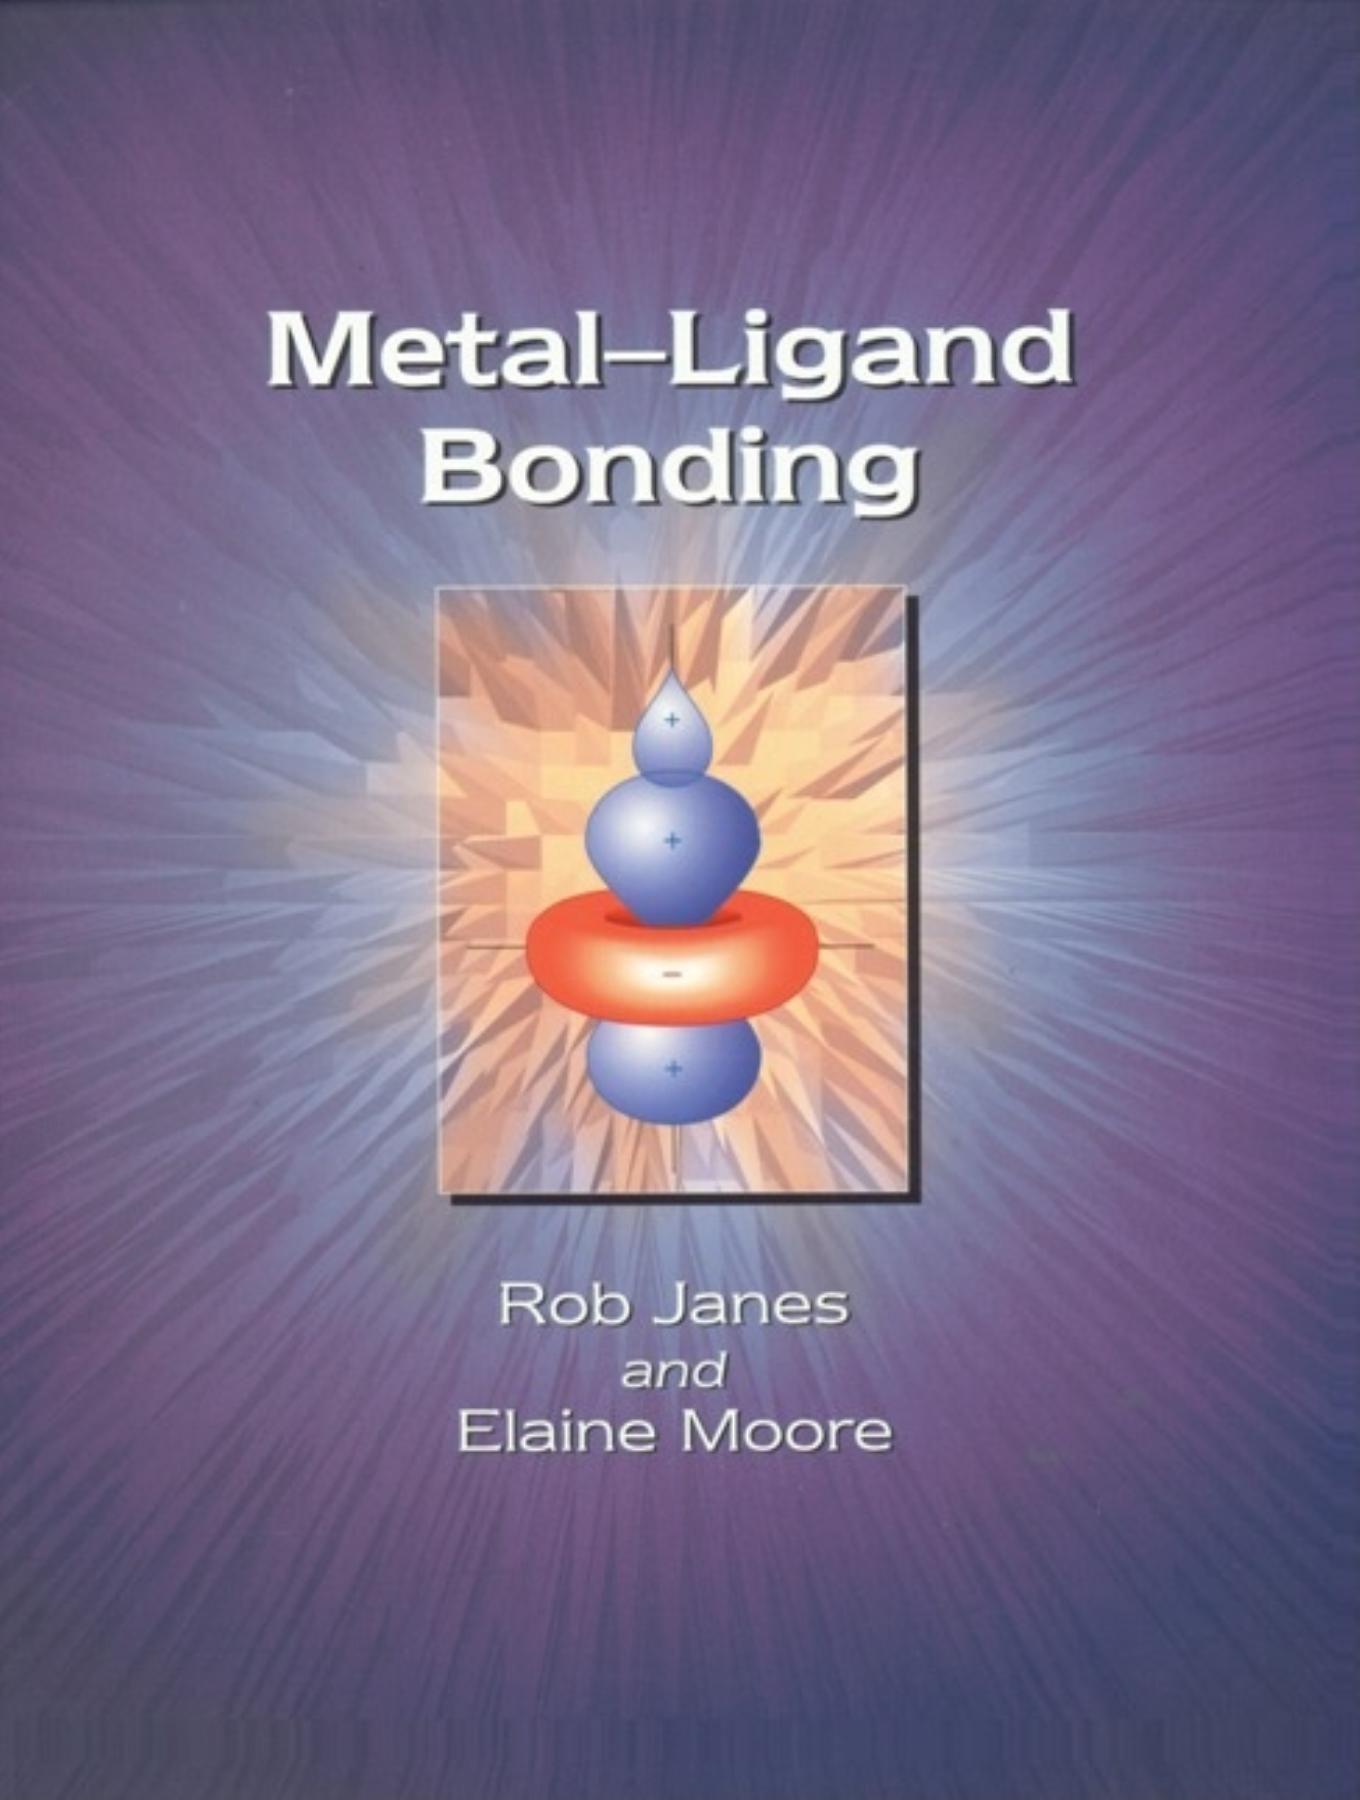 Metal-Ligand Bonding / E A Moore (u. a.) / Taschenbuch / Kartoniert / Broschiert / Englisch / 2004 / RSC Publishing / EAN 9780854049790 - Moore, E A